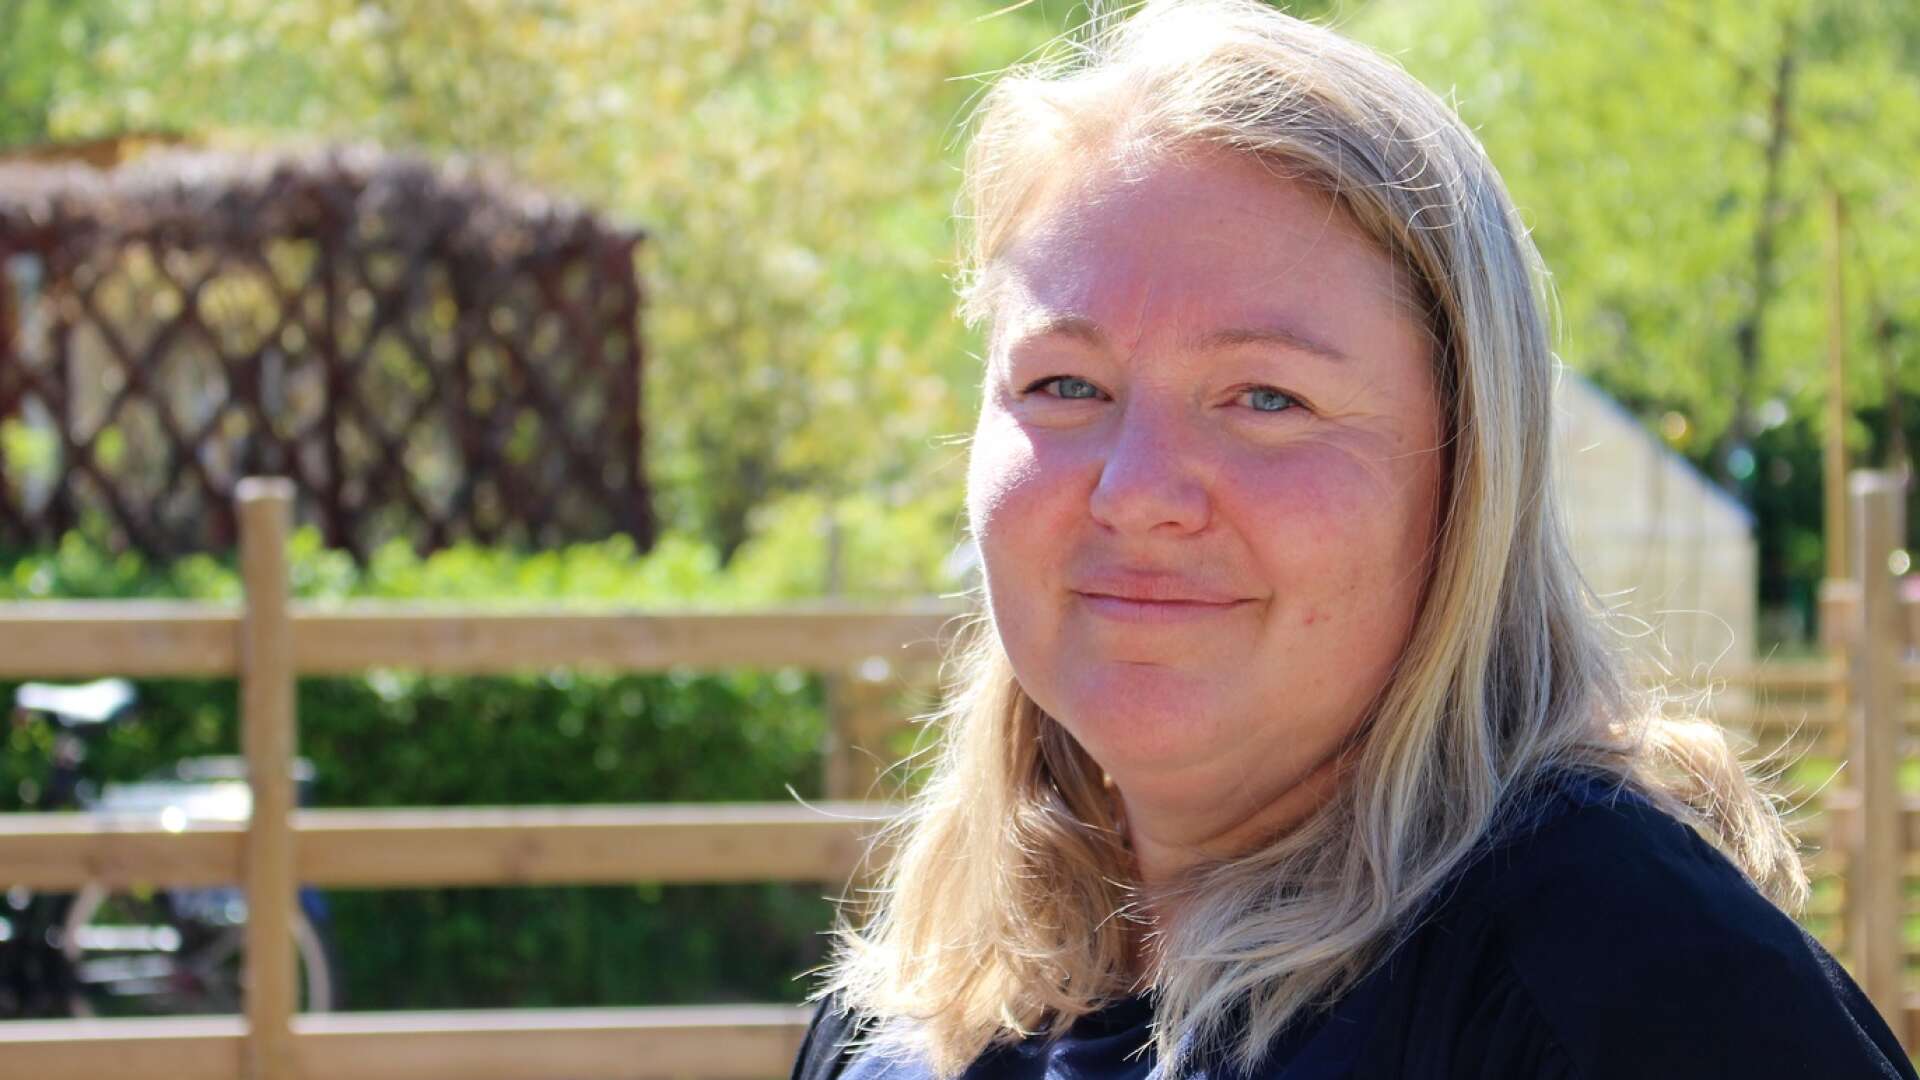 Jessica Mulder Åmberg jobbar som sjuksköterska men utbildar sig till trädgårdsarkitekt på distans. Hon har startat ett företag som sysslar med trädgårdsrådgivning och design.